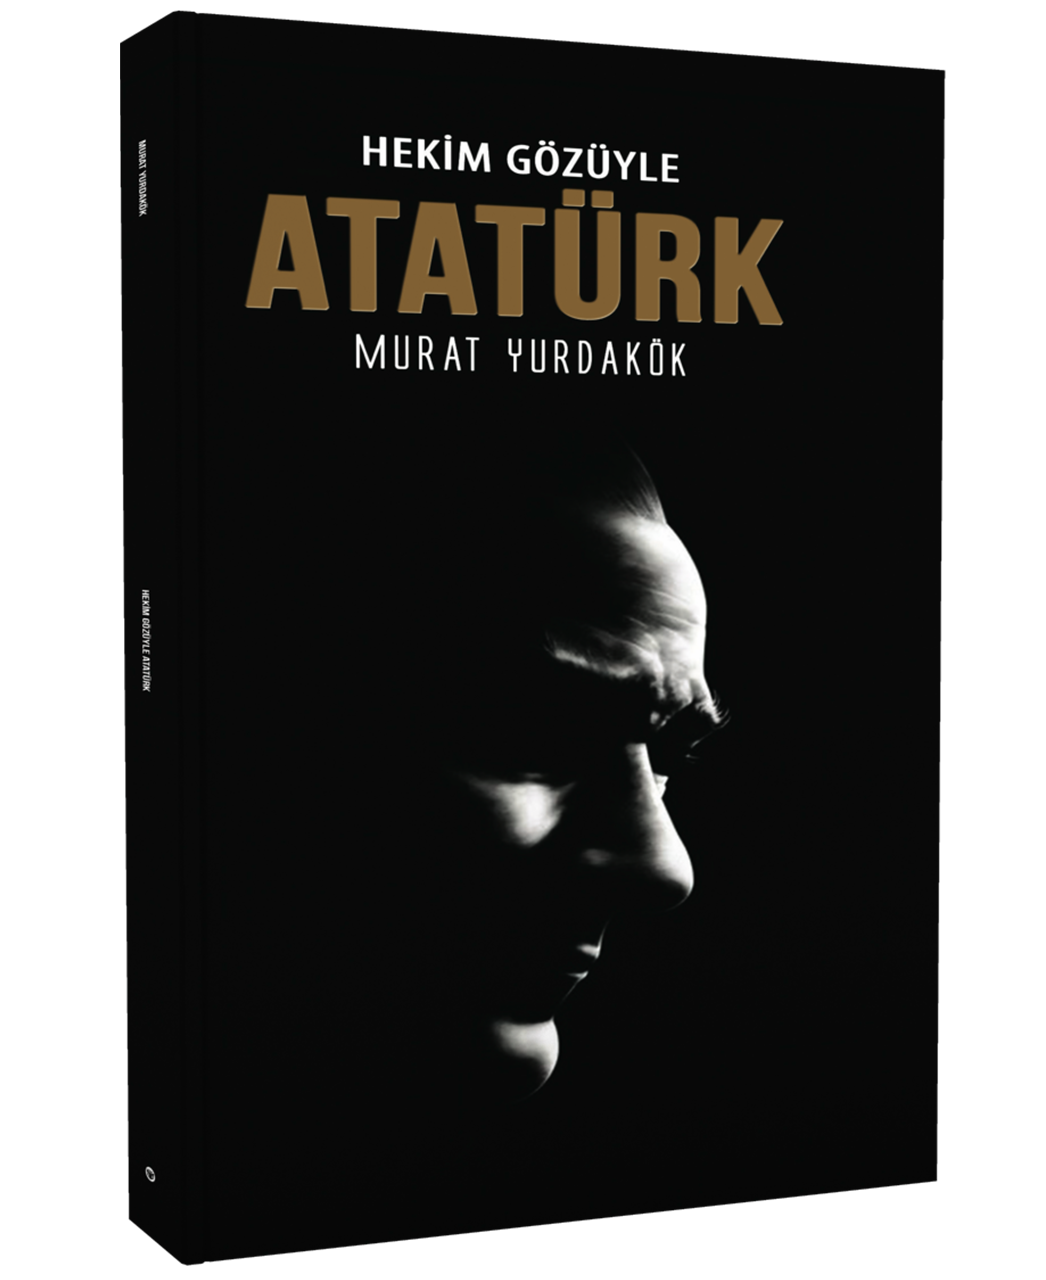 Hekim Gözüyle Atatürk